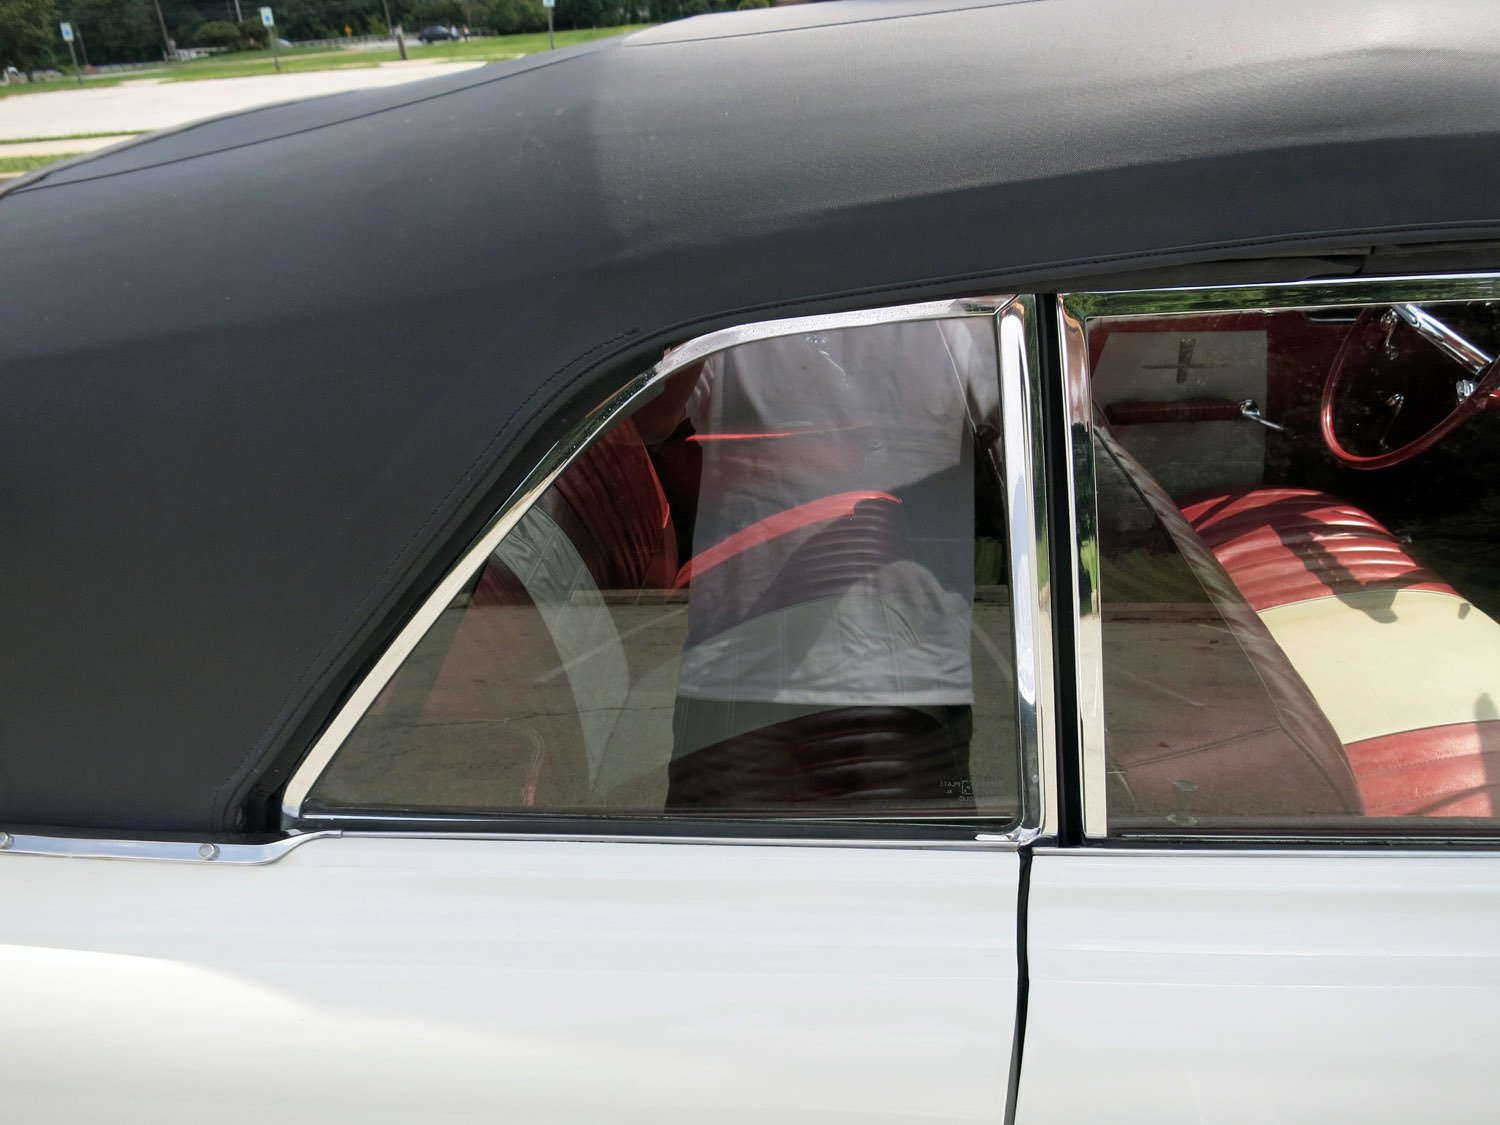 1961 Oldsmobile 88